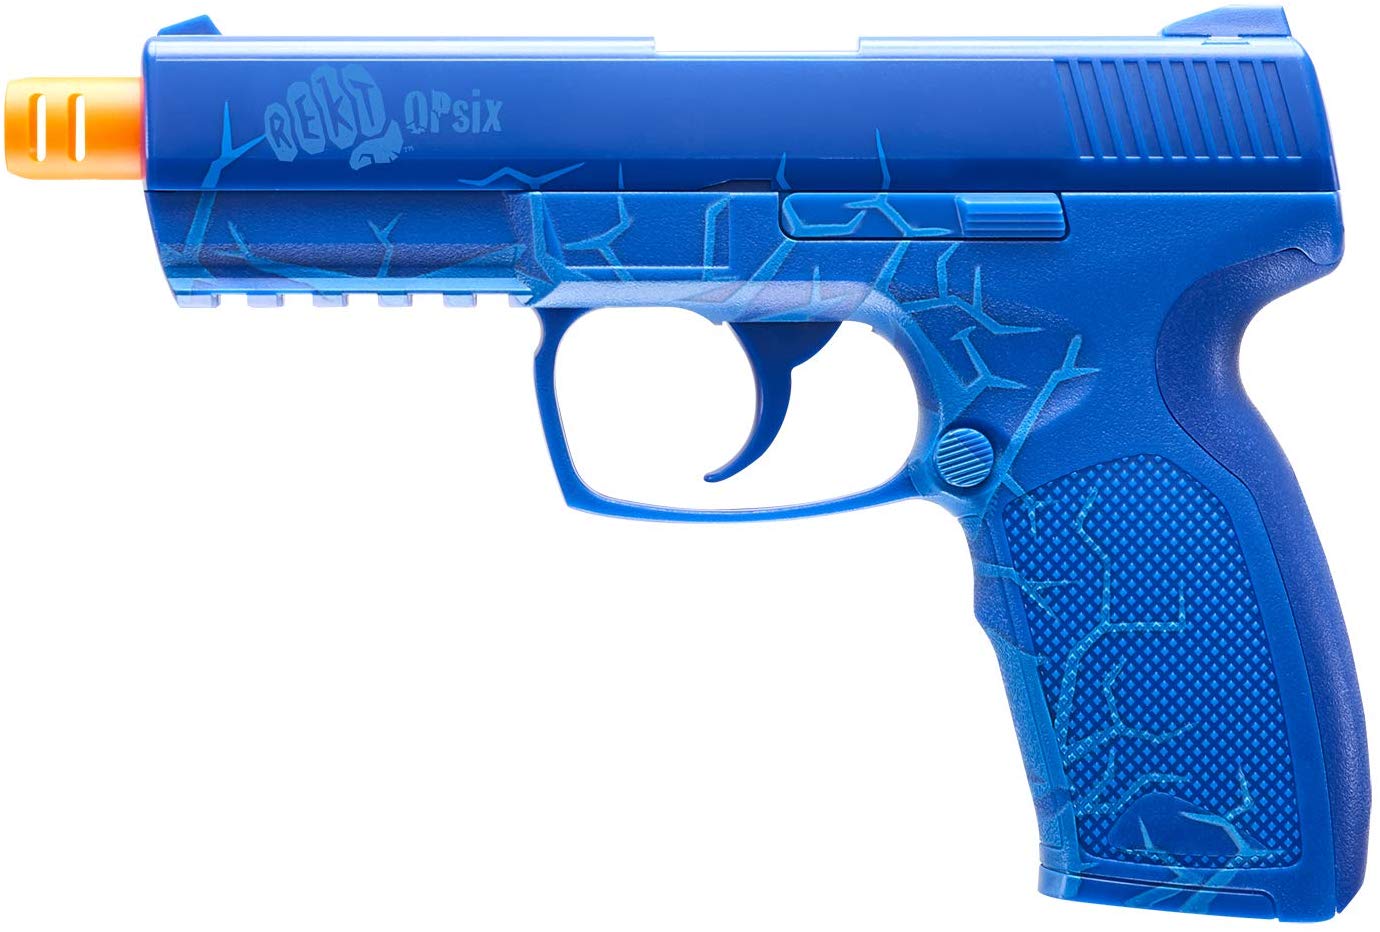 Umarex Rekt OpSix Co2 Foam Dart Pistol - Blue - Umarex